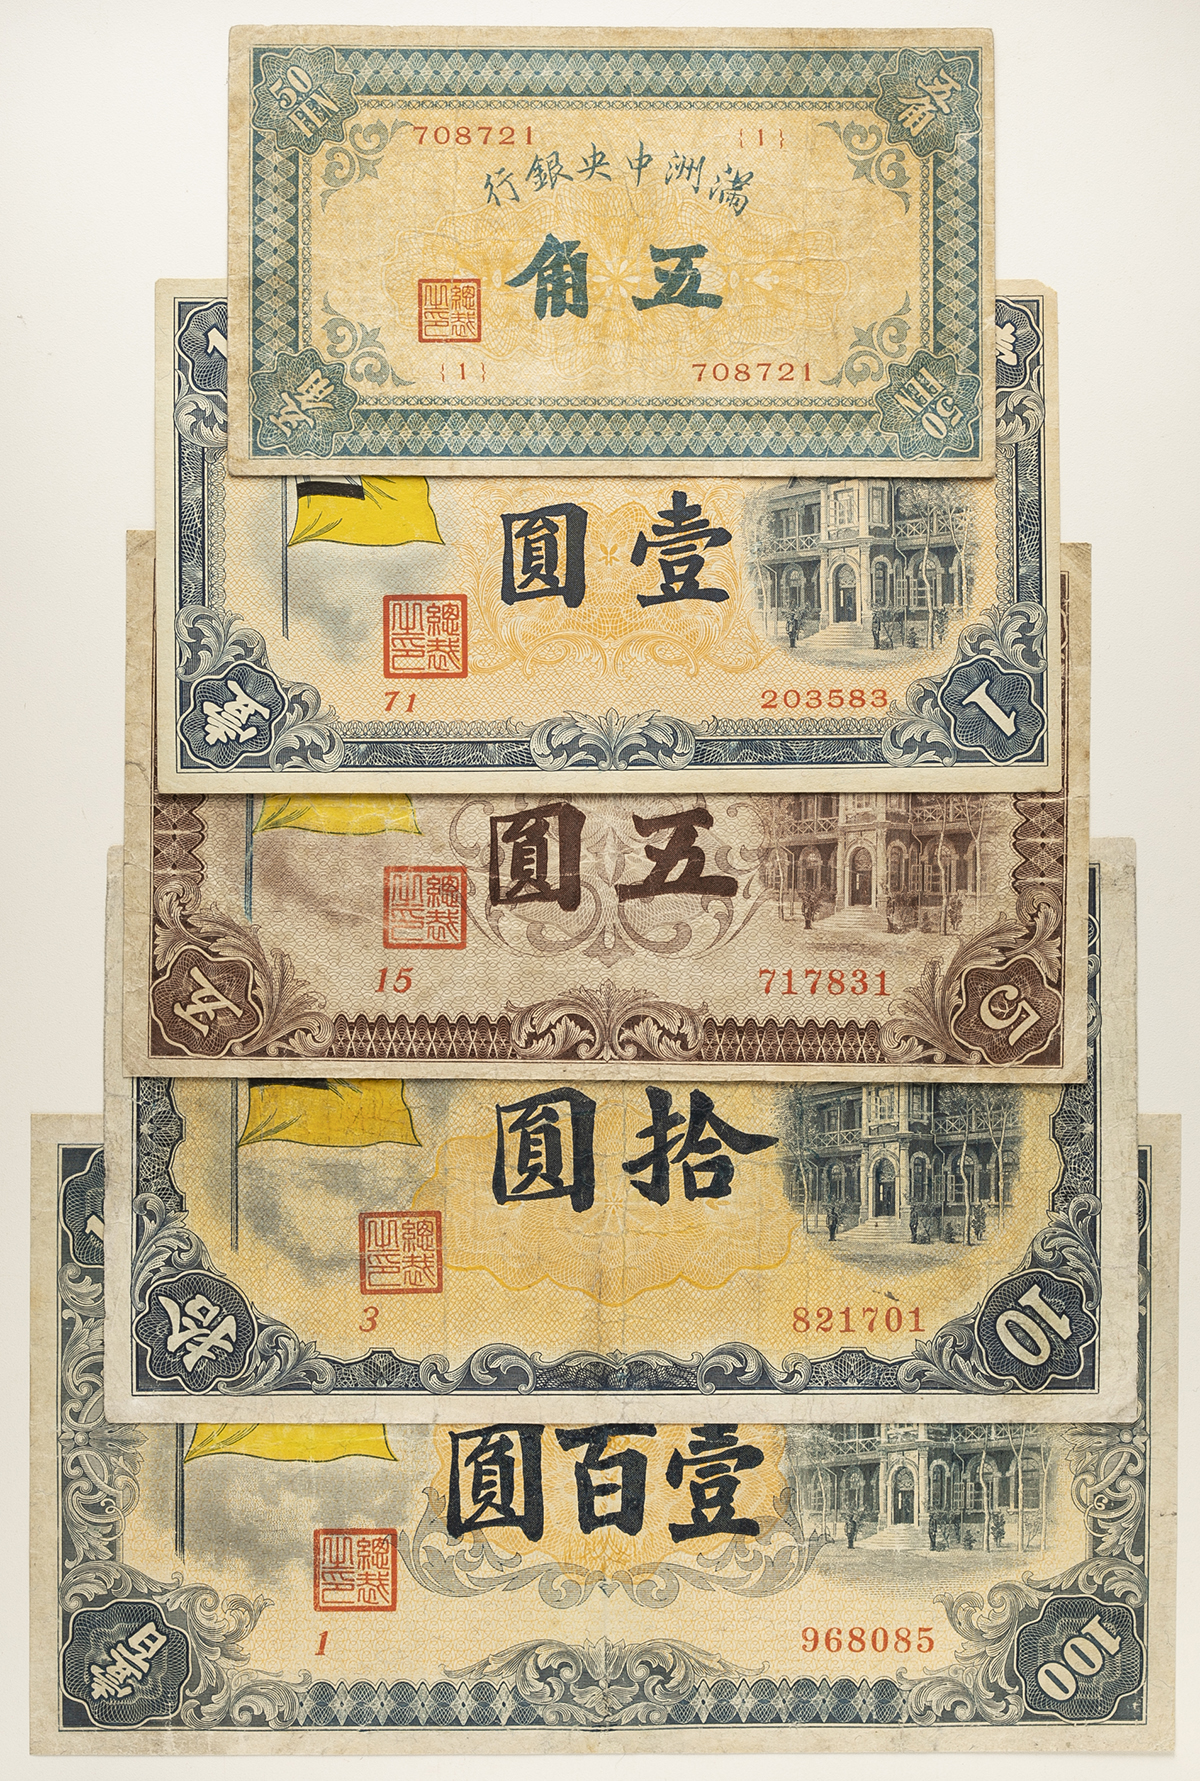 満州中央銀行 壹百圓 甲号券 満州紙幣 中国紙幣 在外銀行券 古札 旧